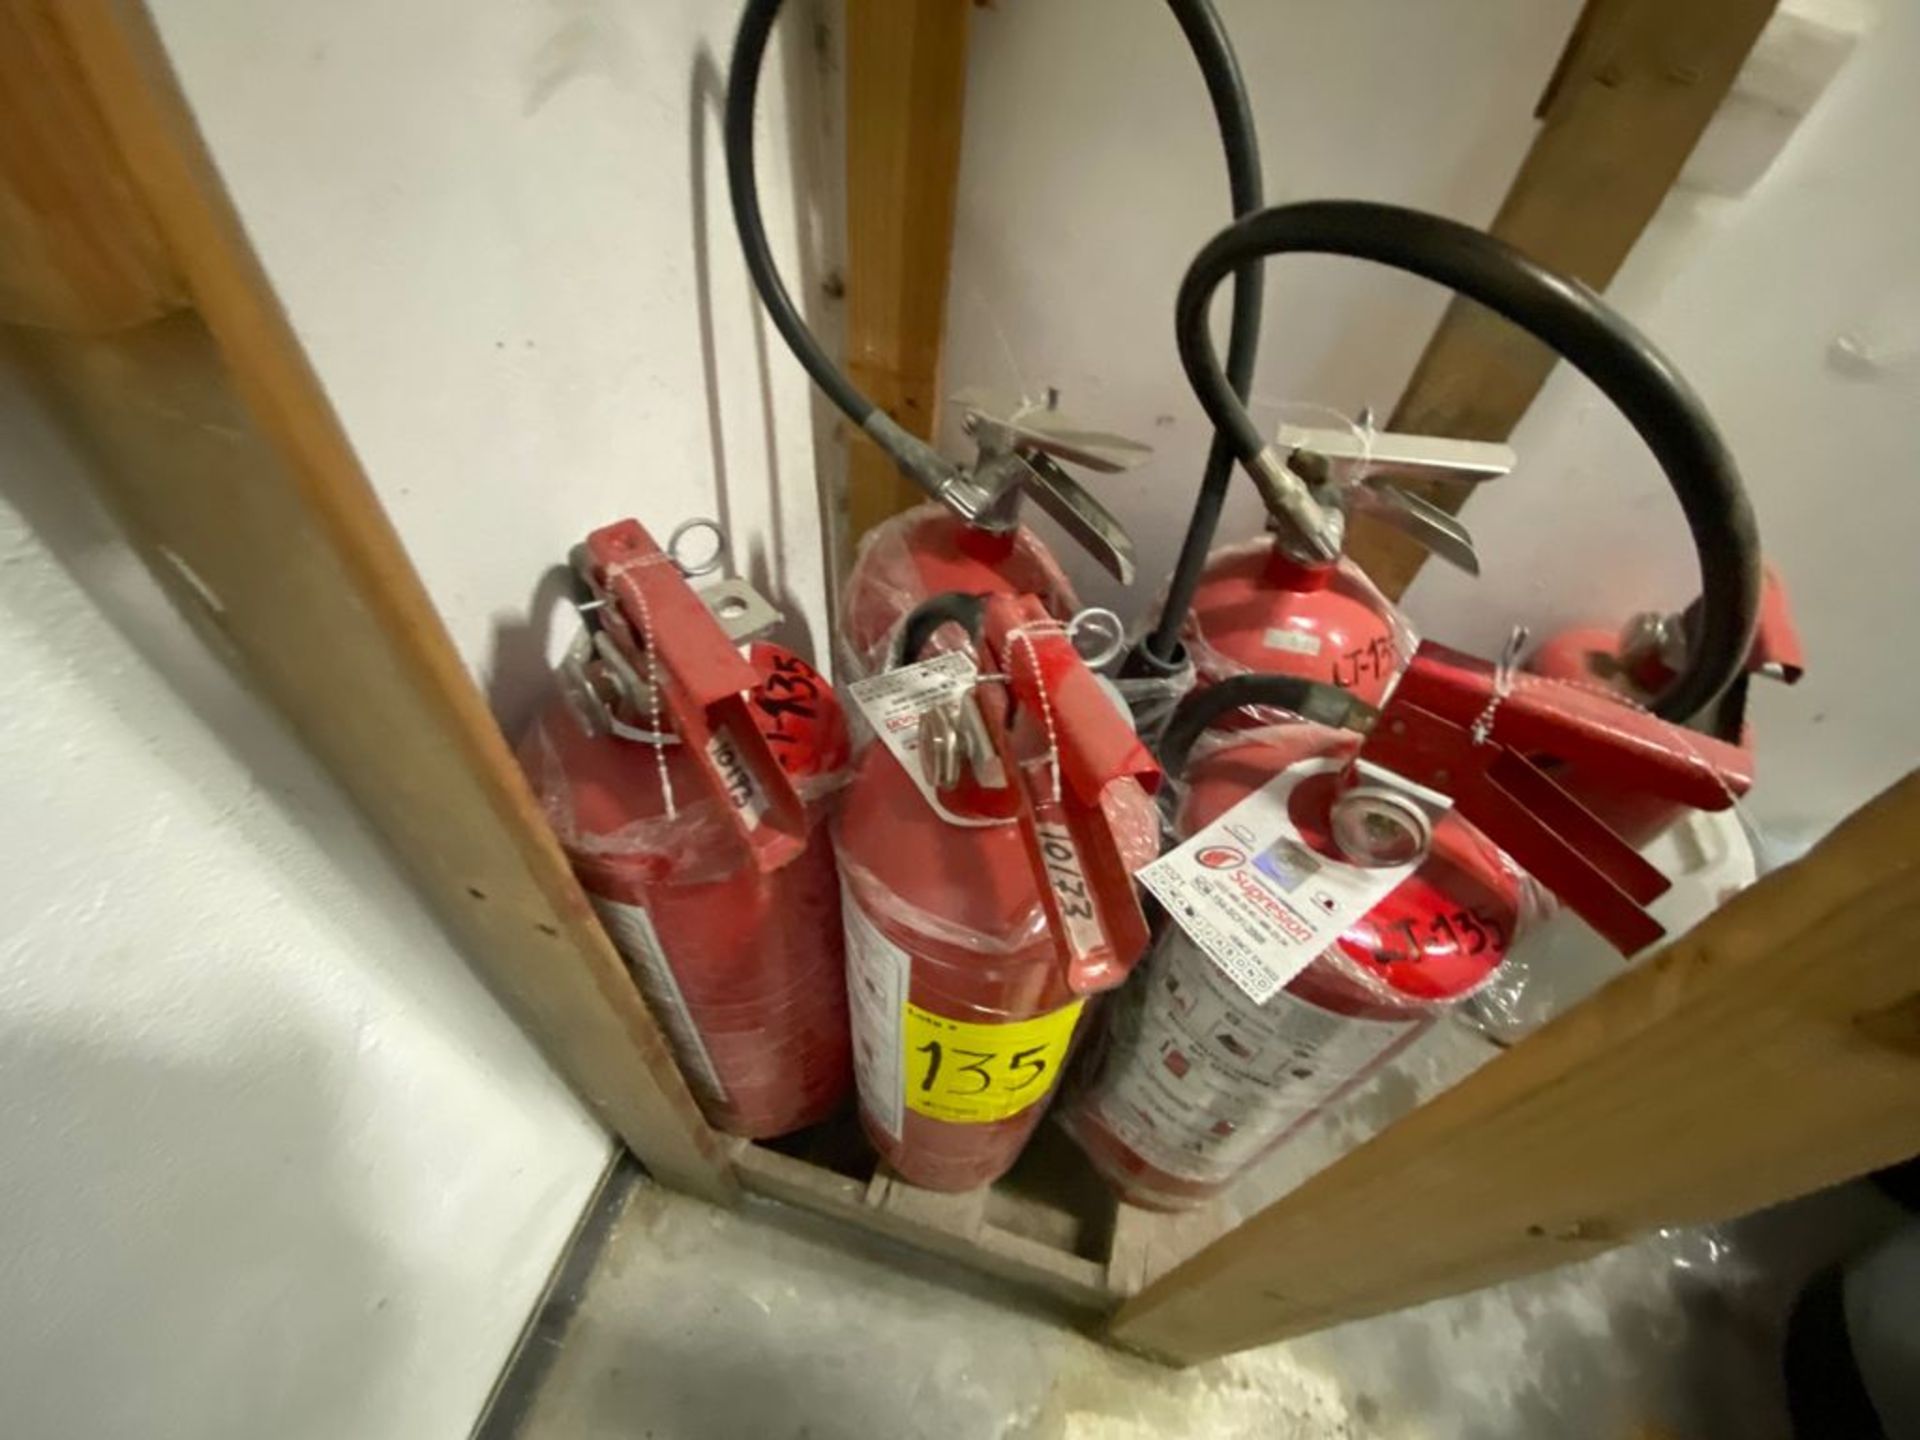 Lote de 21 Extintores distribuidos en toda la tienda - Image 14 of 56